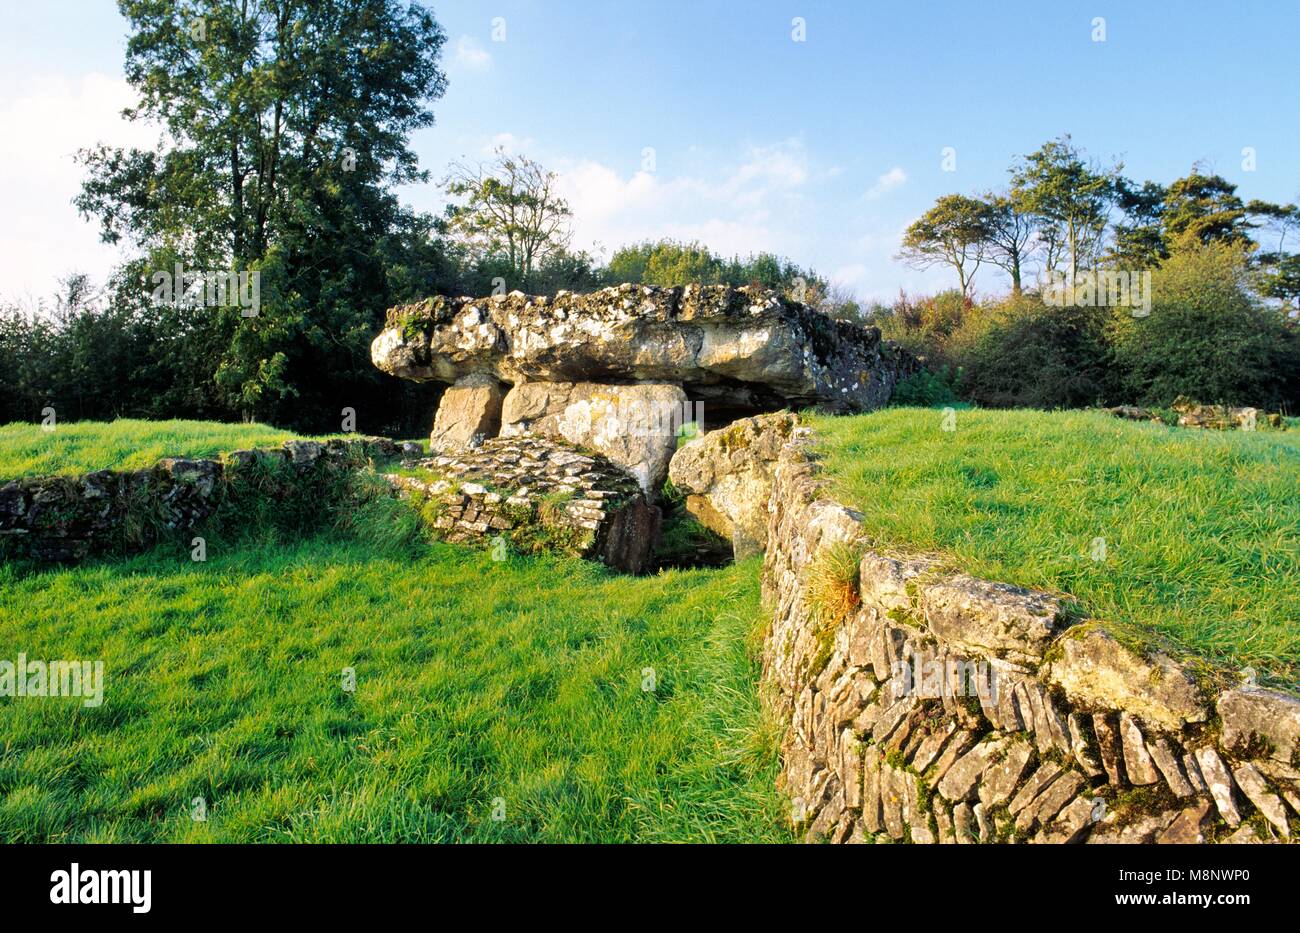 Tinkinswood prähistorische neolithische Grabkammer Hügel und zentrale Cist Megalithen in der Nähe von Barry, South Glamorgan, South Wales, UK Stockfoto